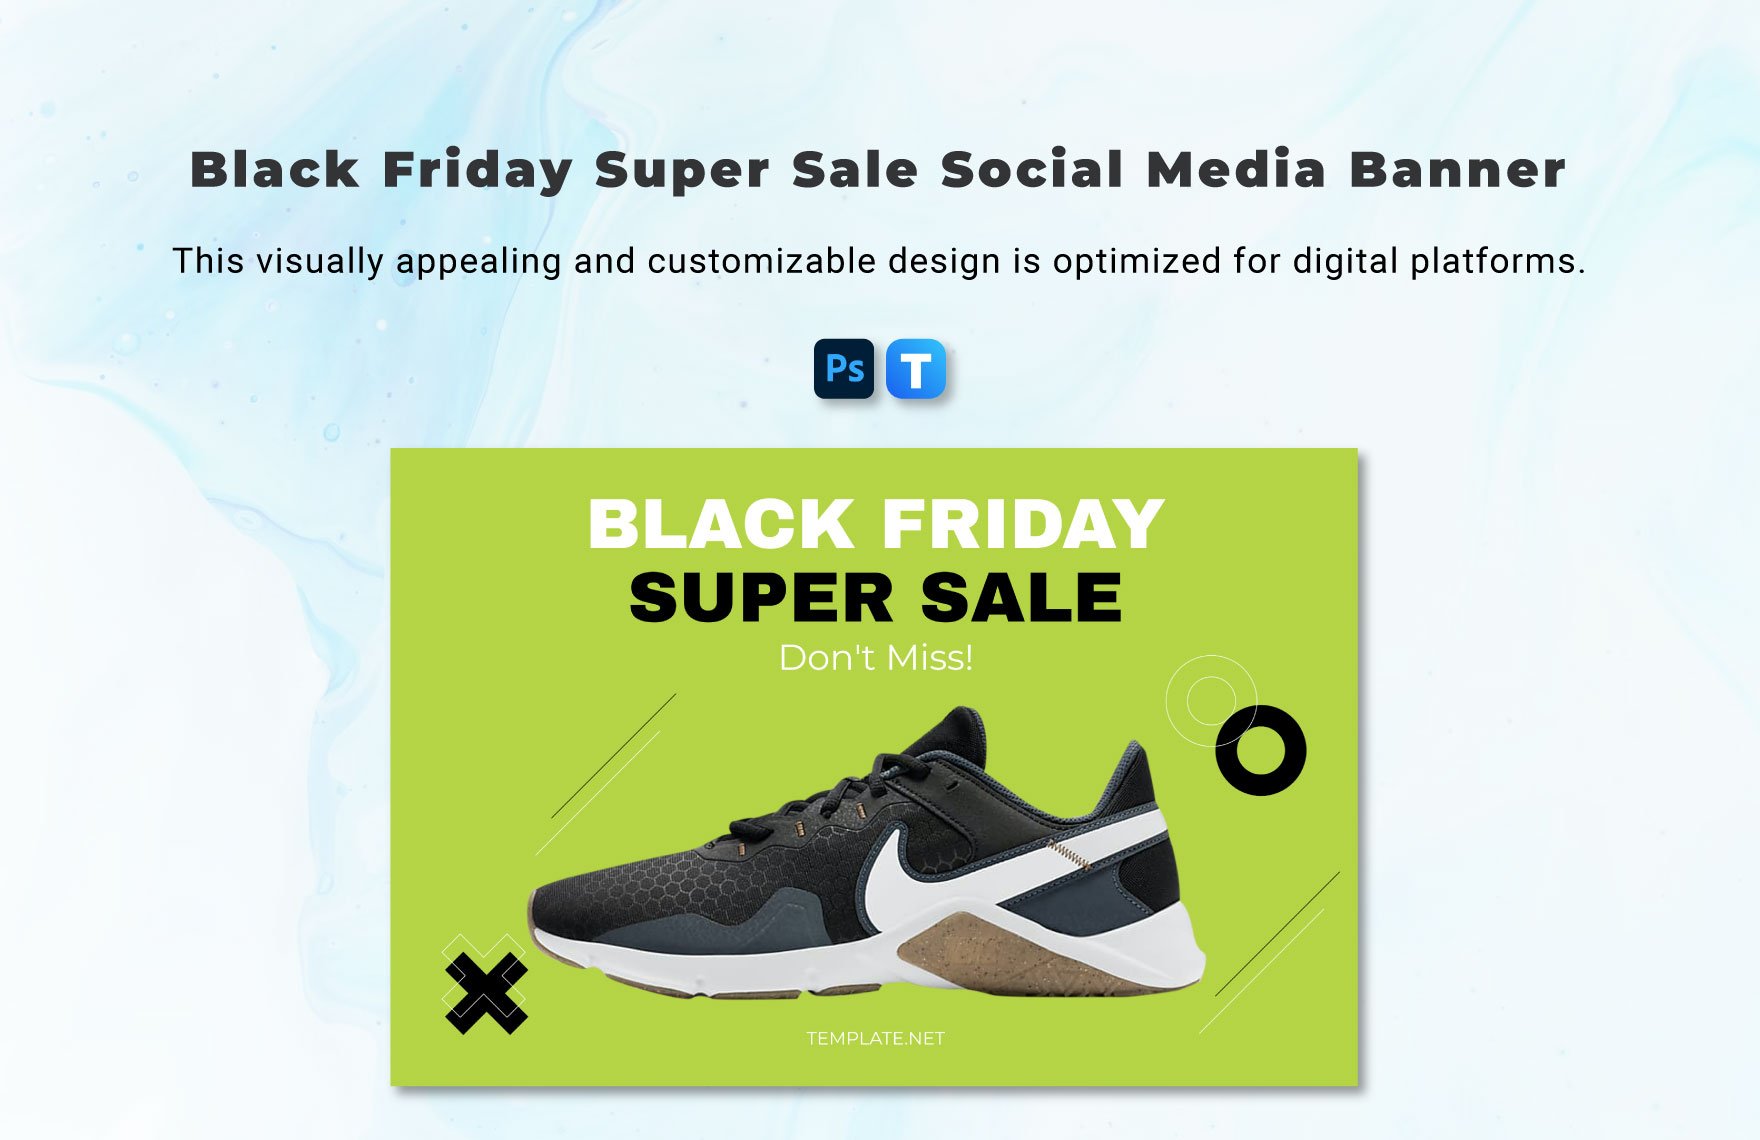 Black Friday Super Sale Social Media Banner